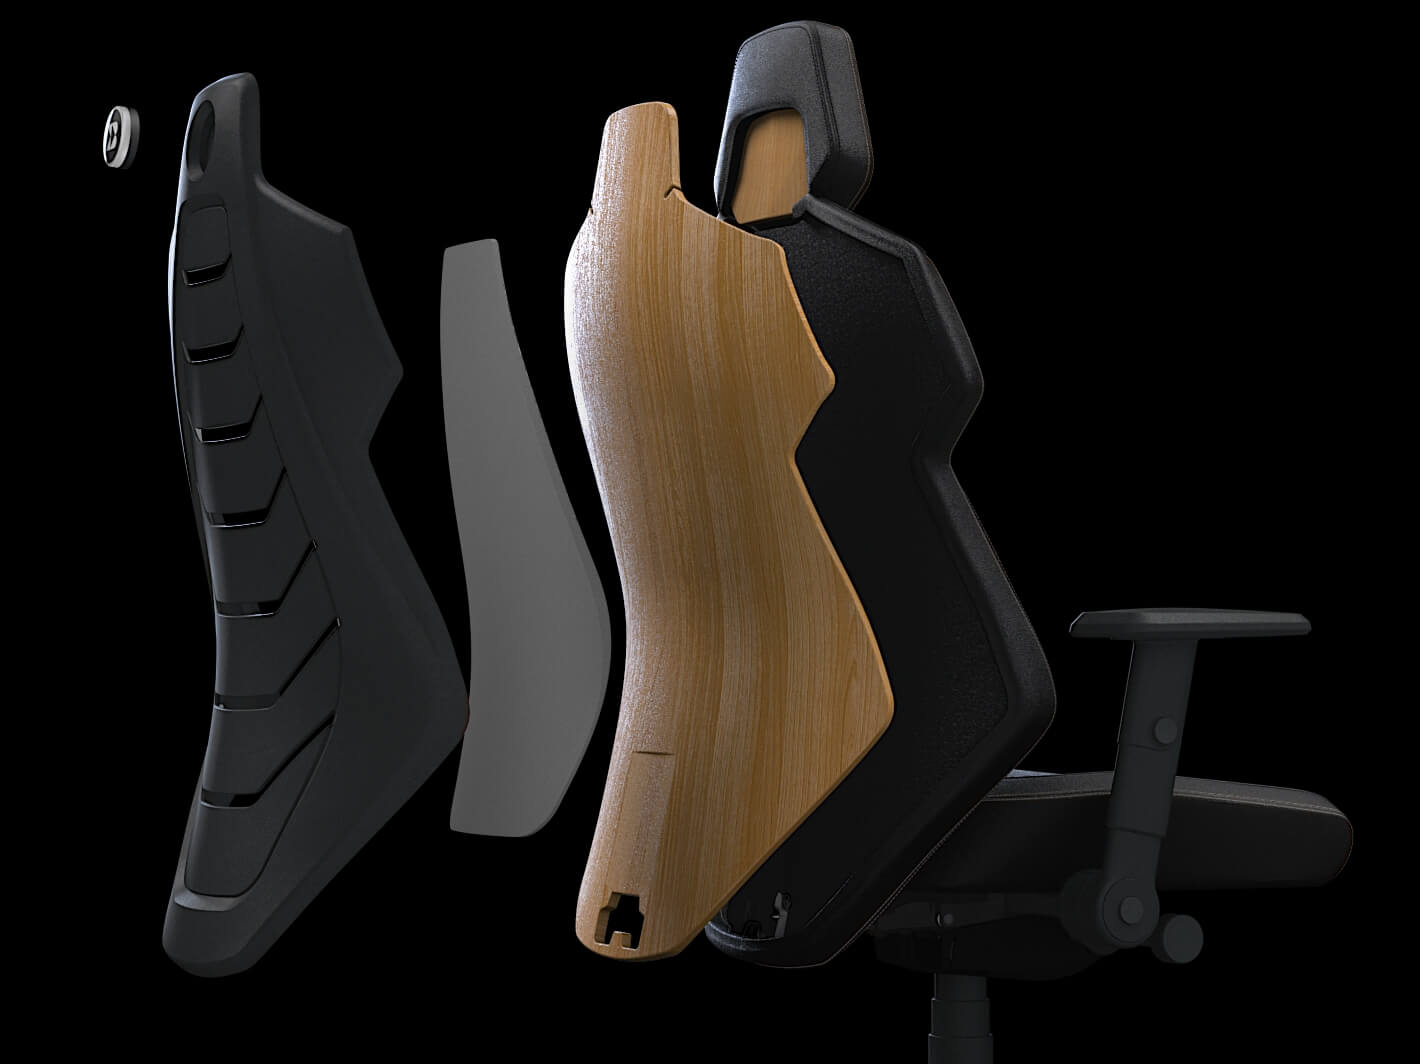 Gaming-Stuhl: Aufbau der Rückenlehne eines Gaming-Chairs